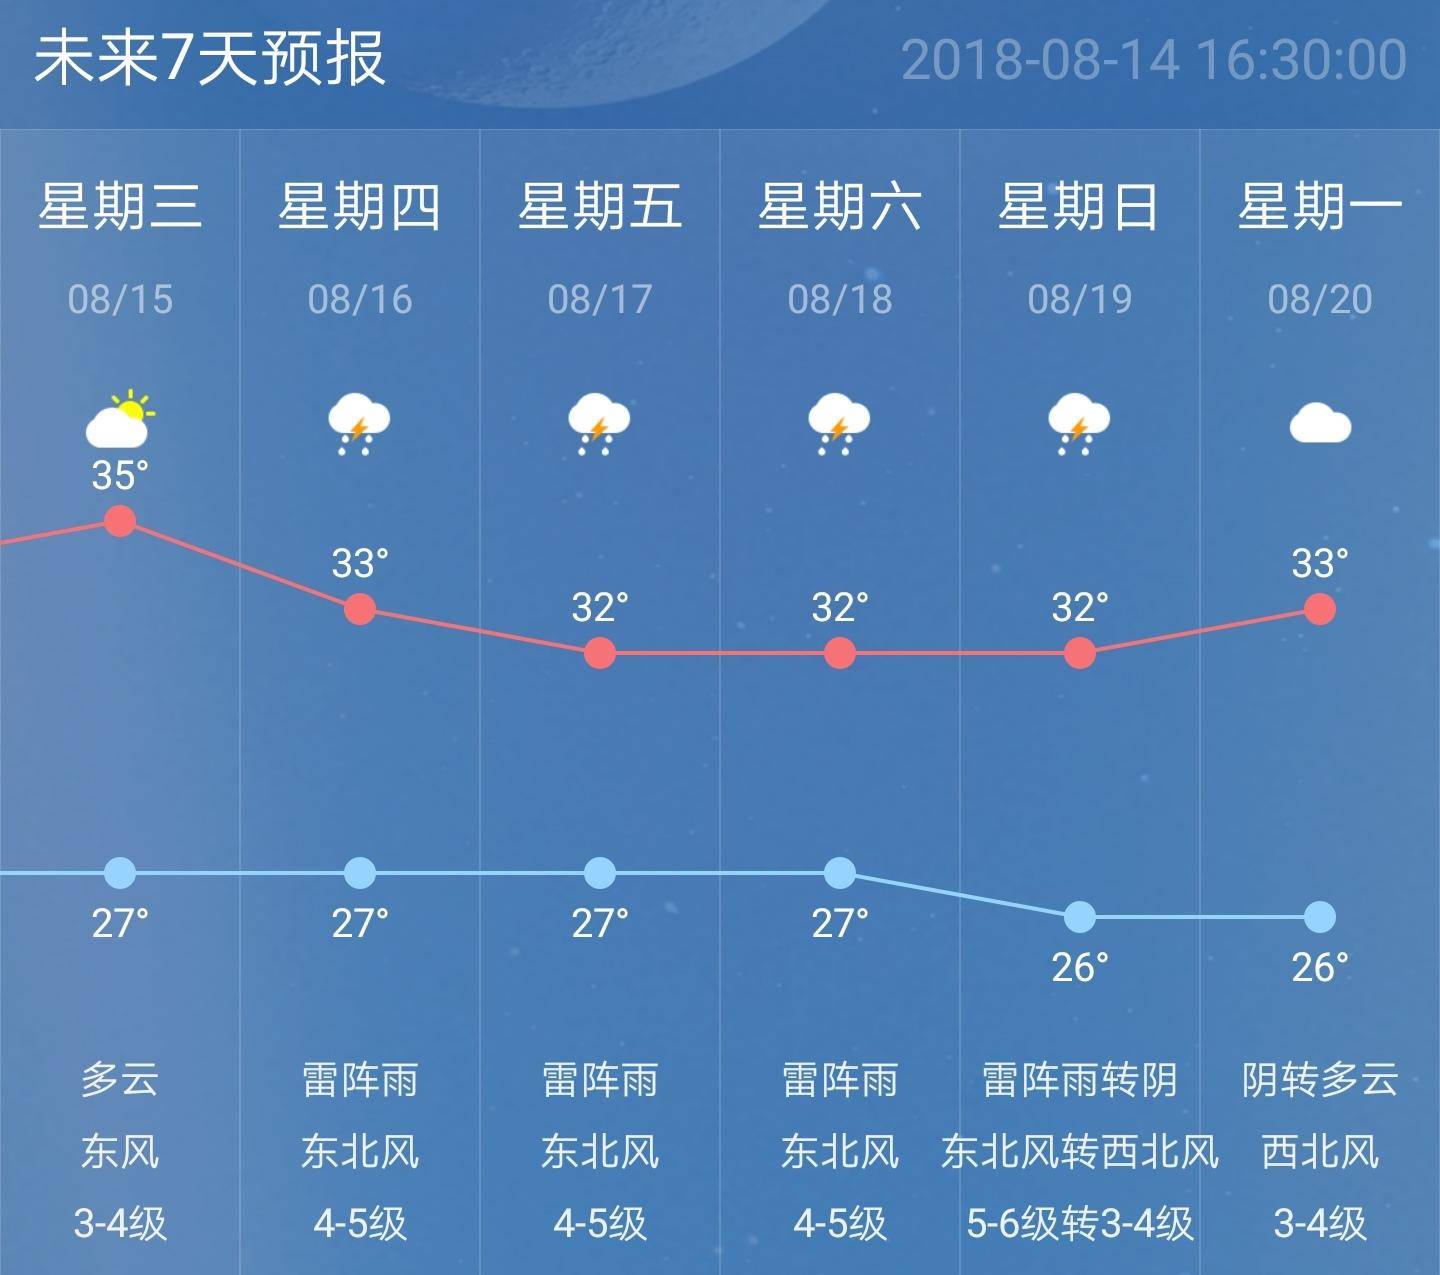 为啥今日南京天空这么美?气象专家:这是